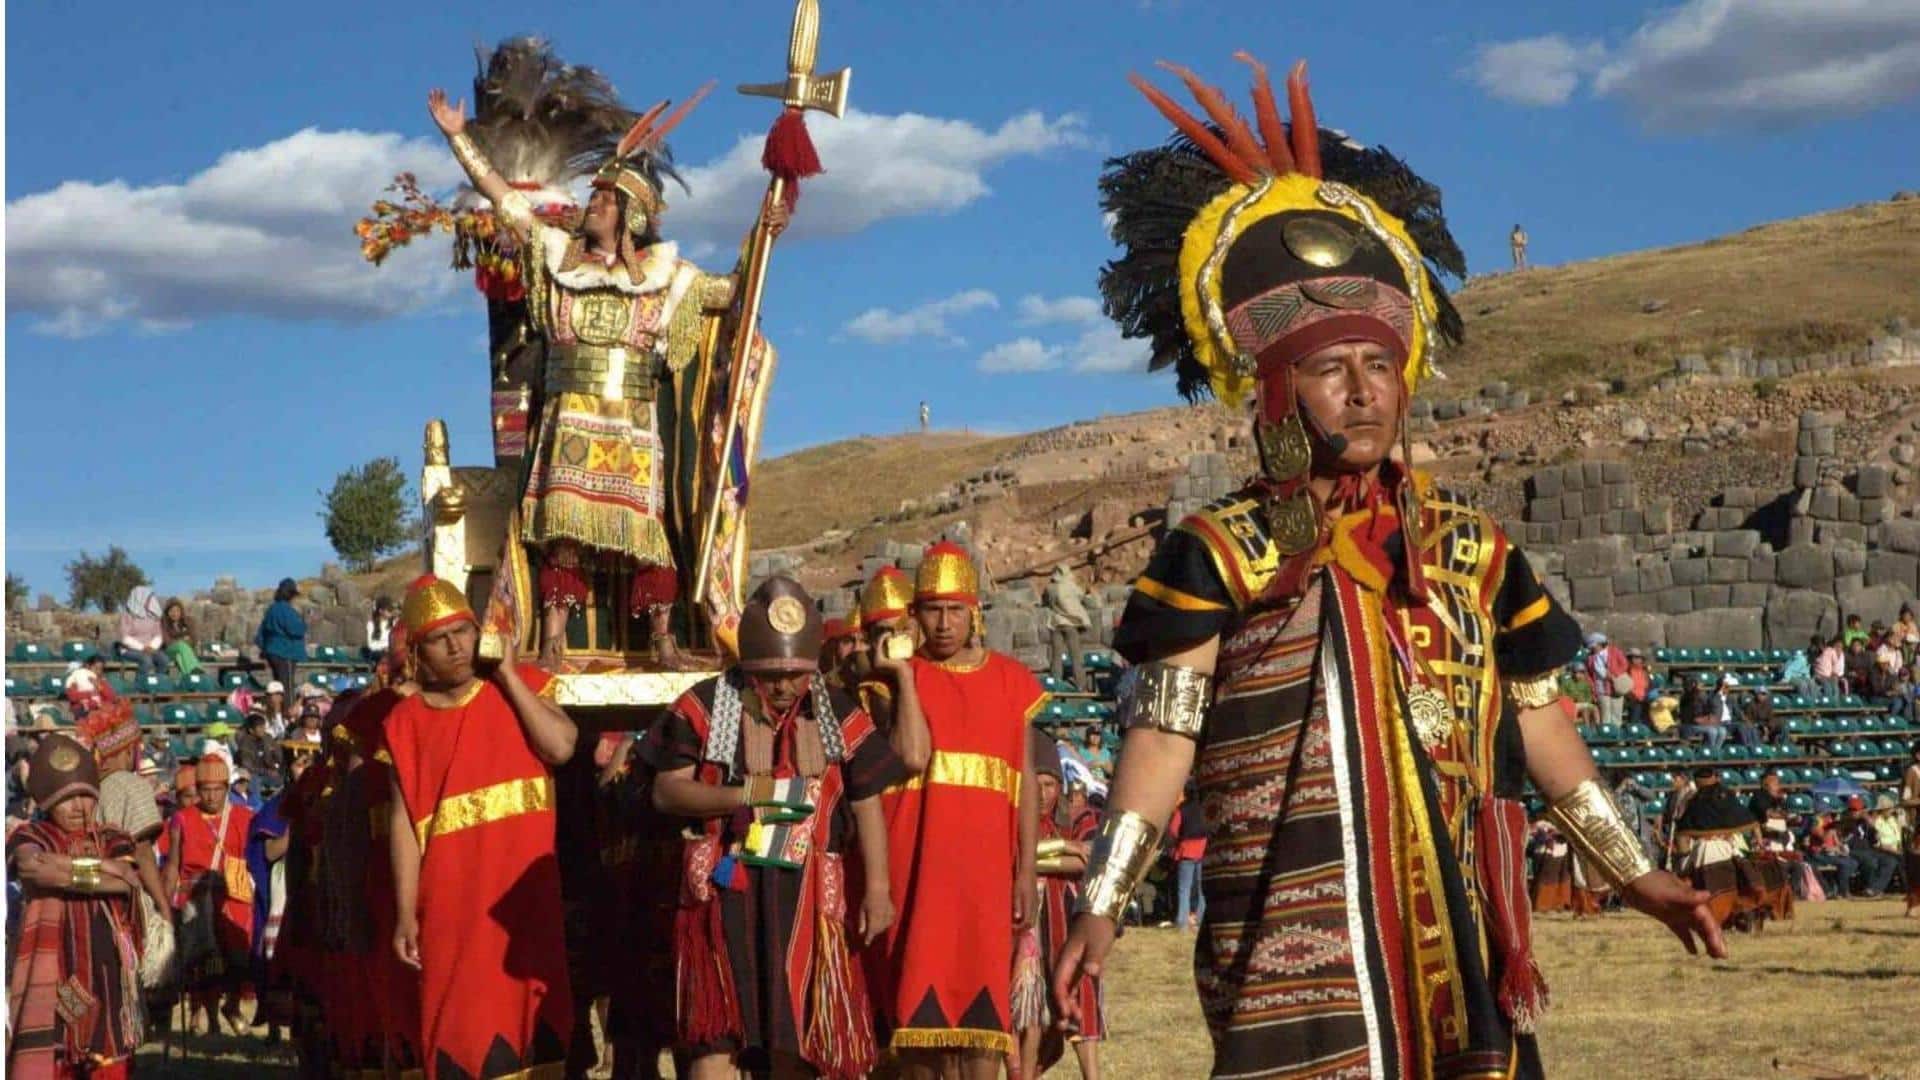 Telusuri perayaan Inti Raymi di Cusco